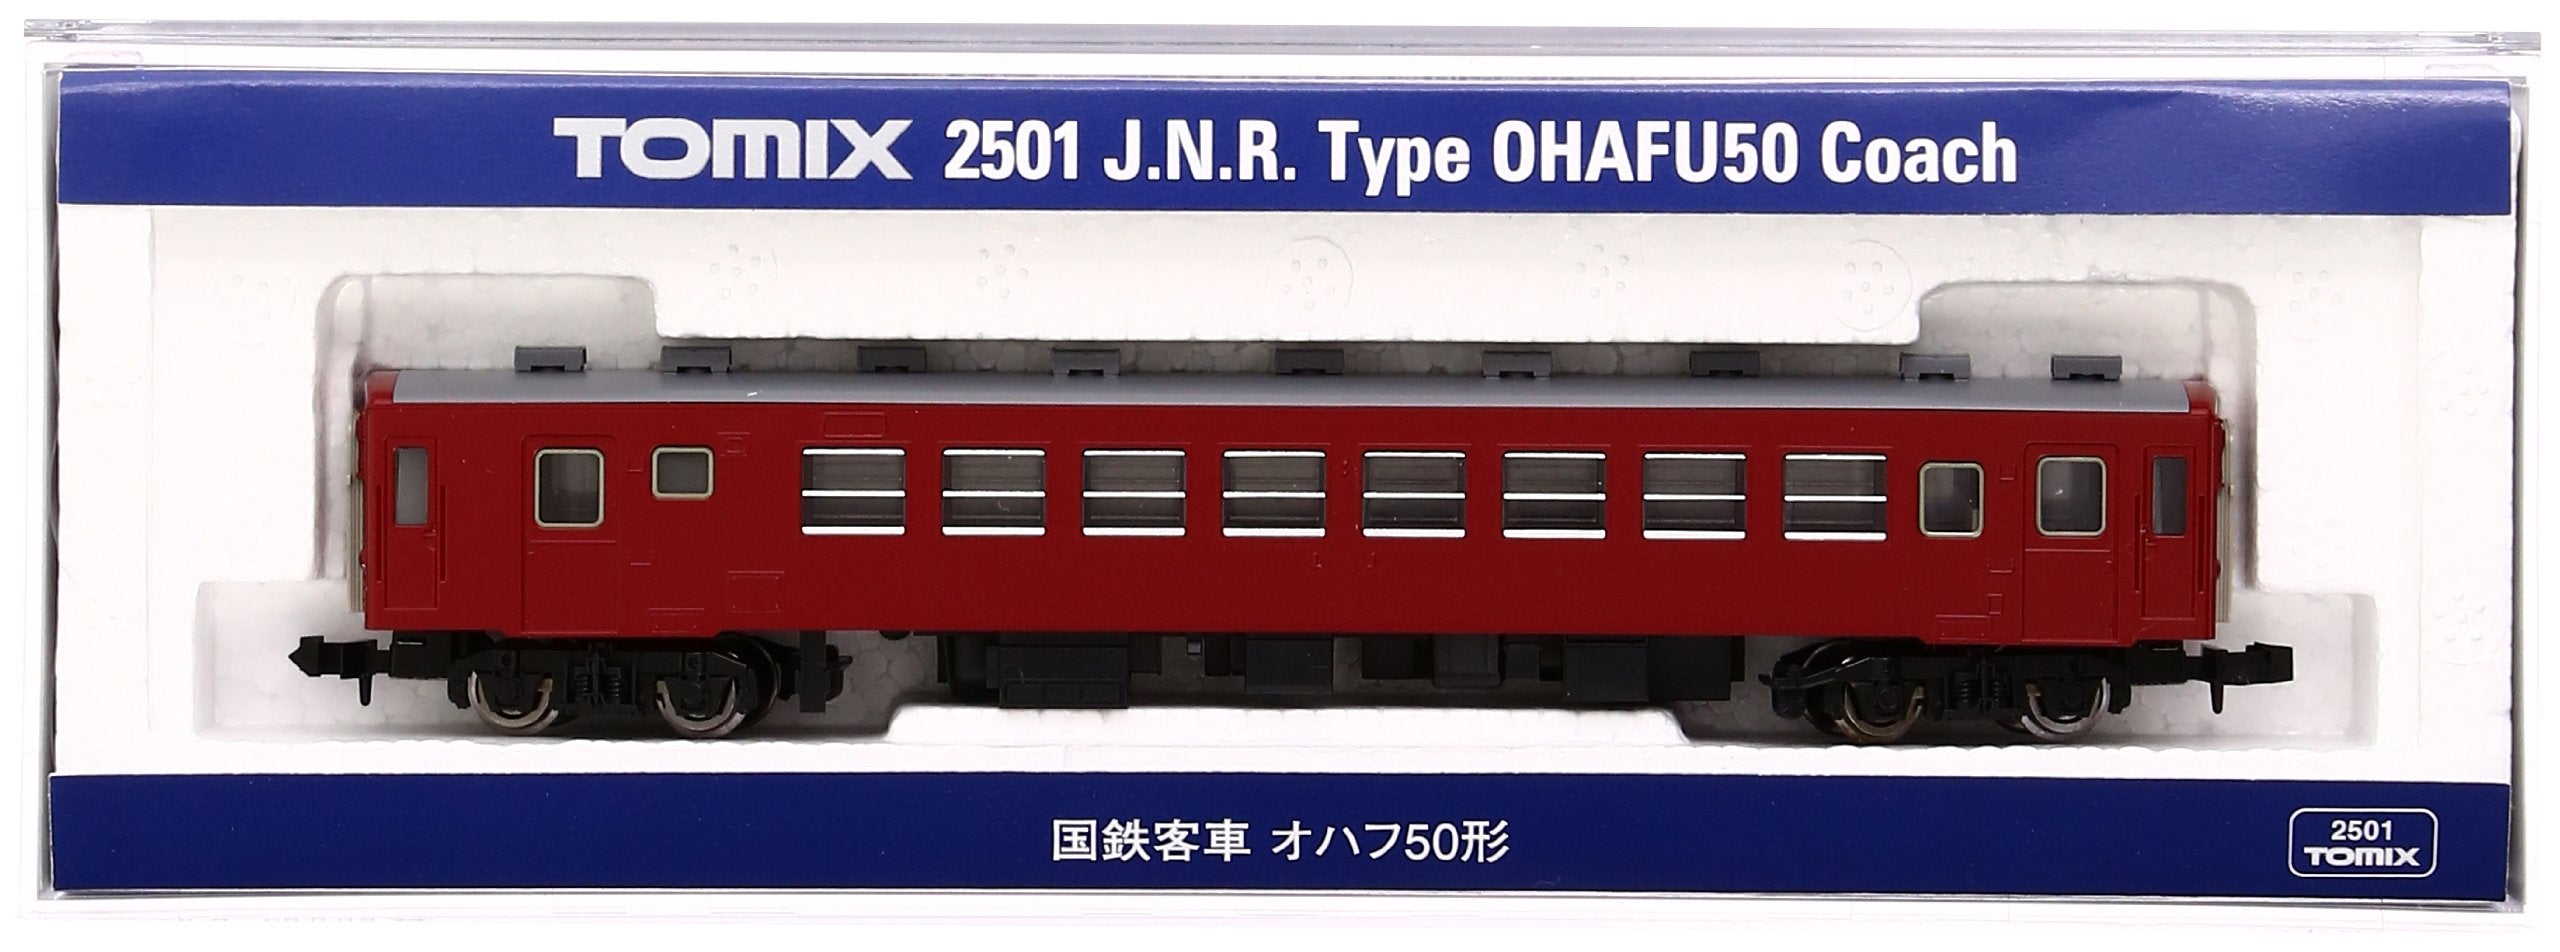 J.N.R. Type OHAFU50 Coach